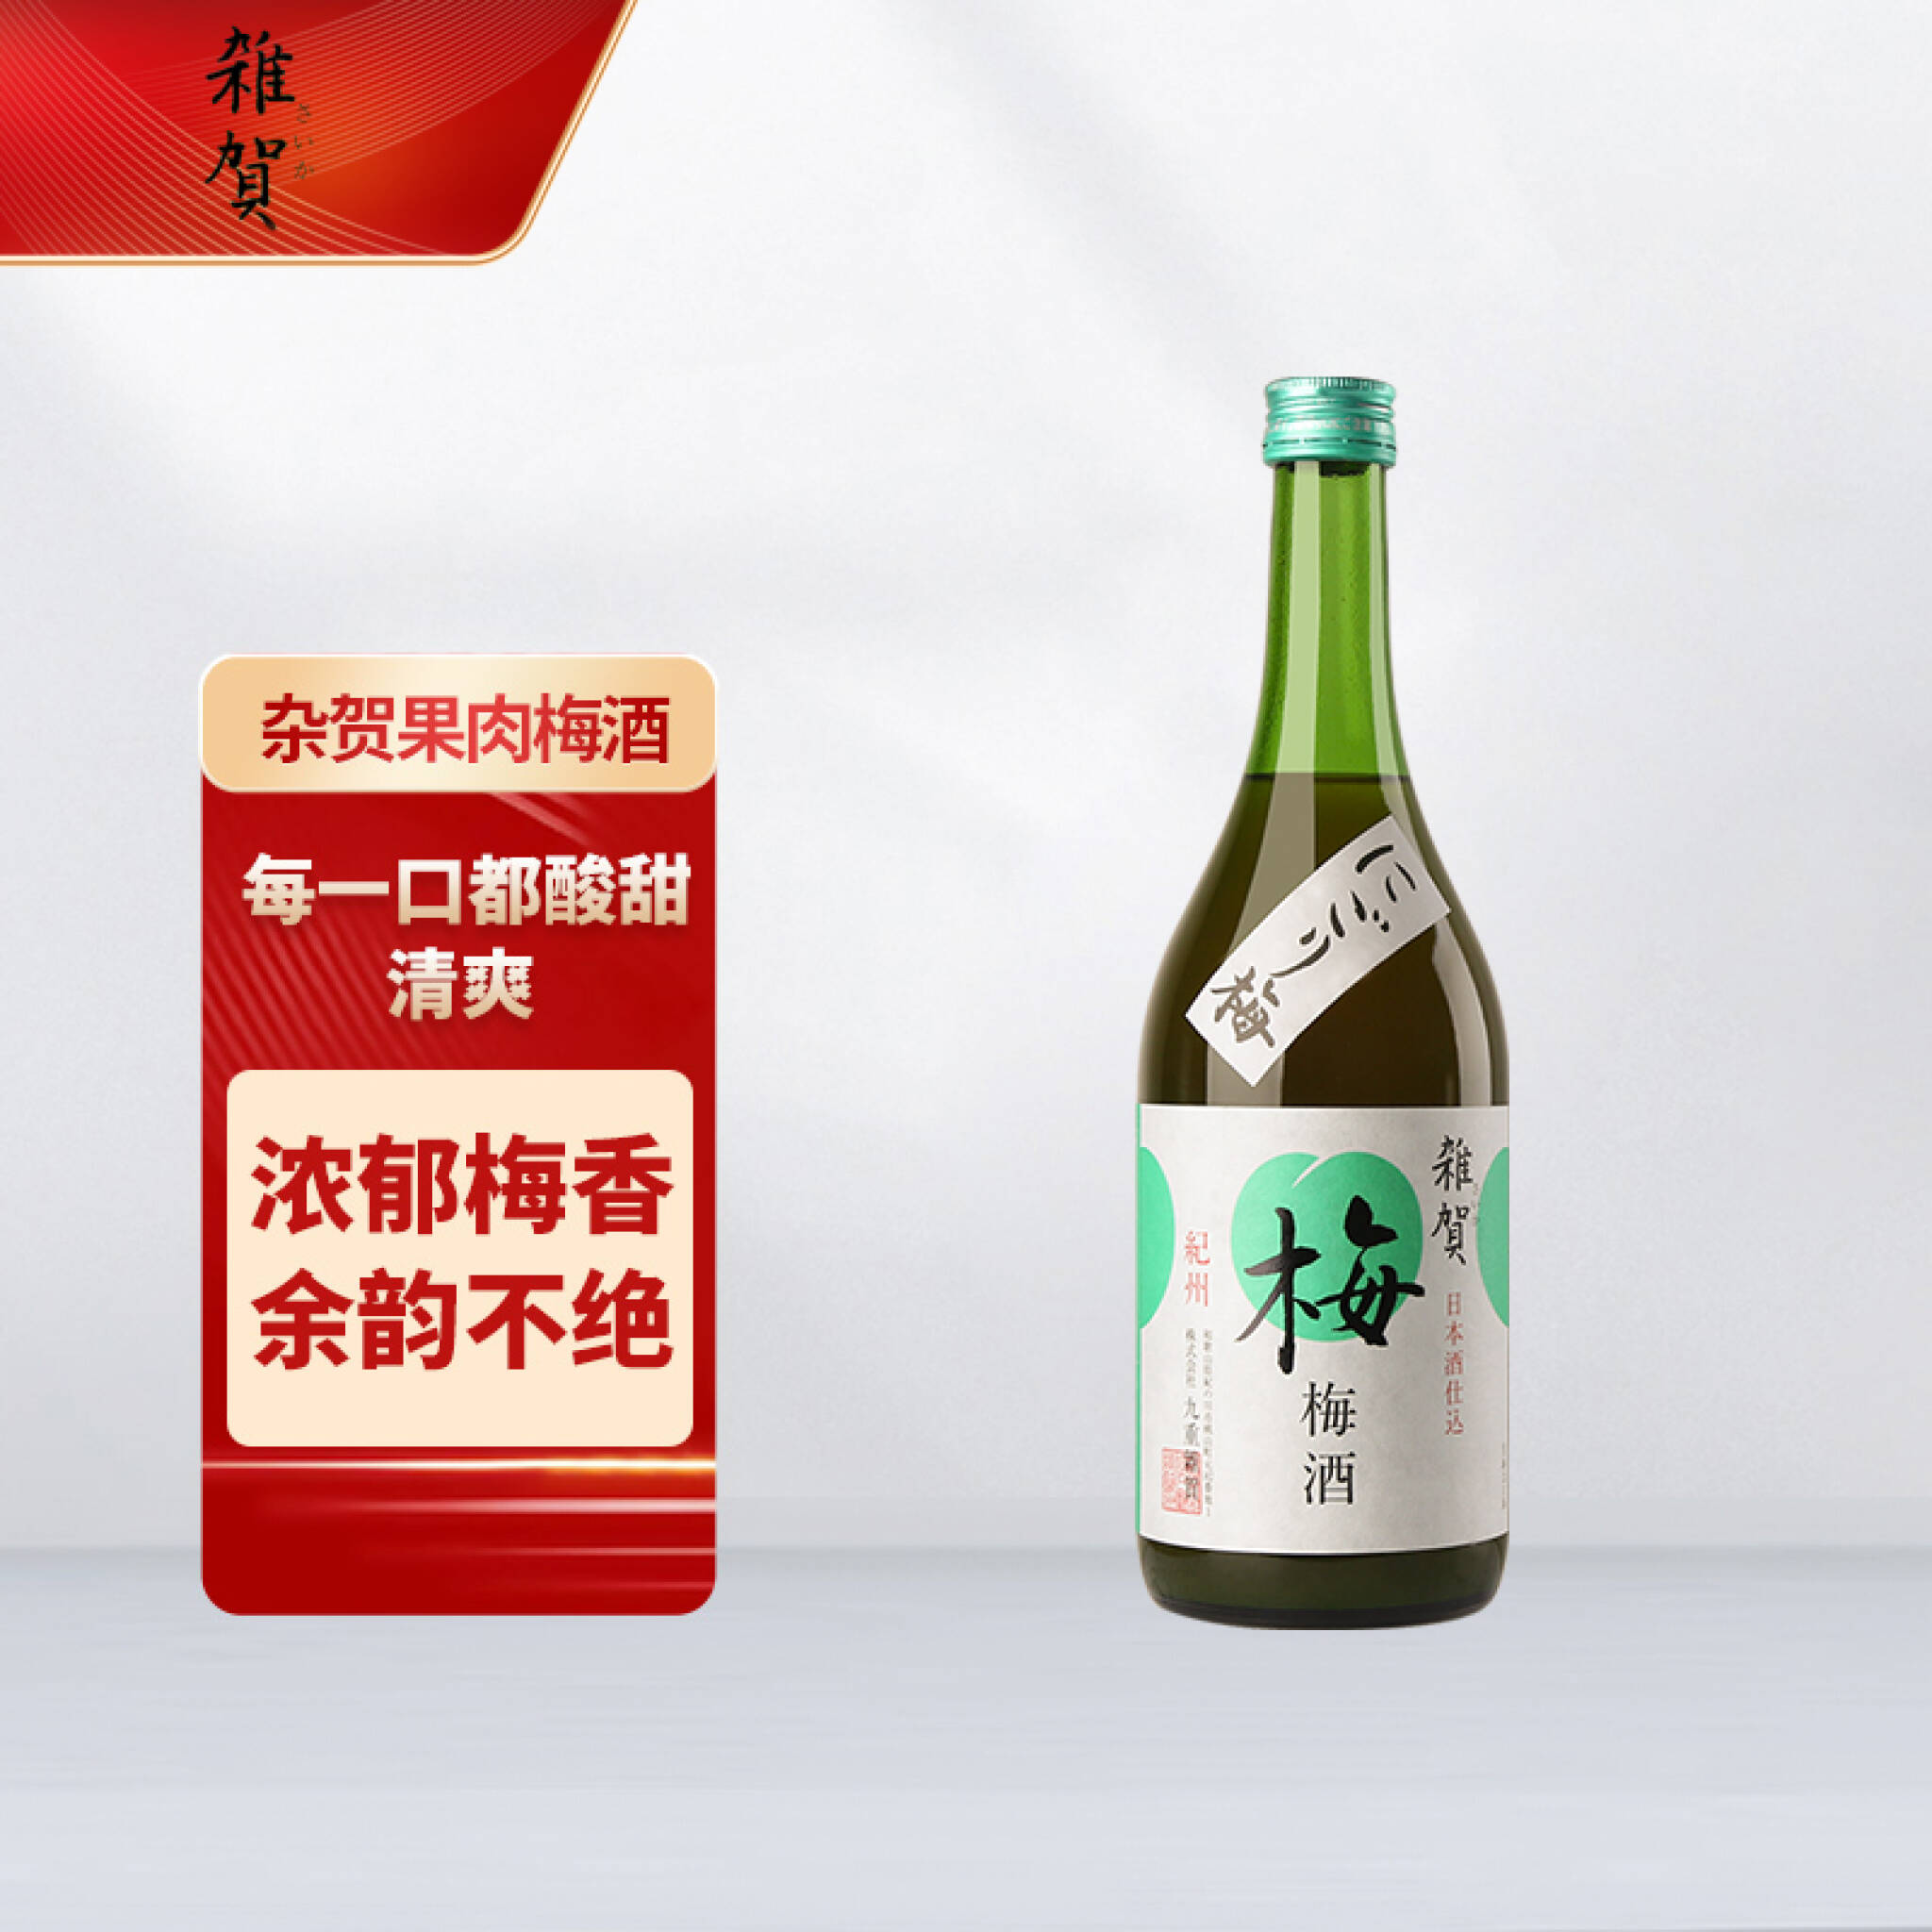 黎 梅酒17年(黒糖梅酒)1000本限定発売 酒 | red-village.com